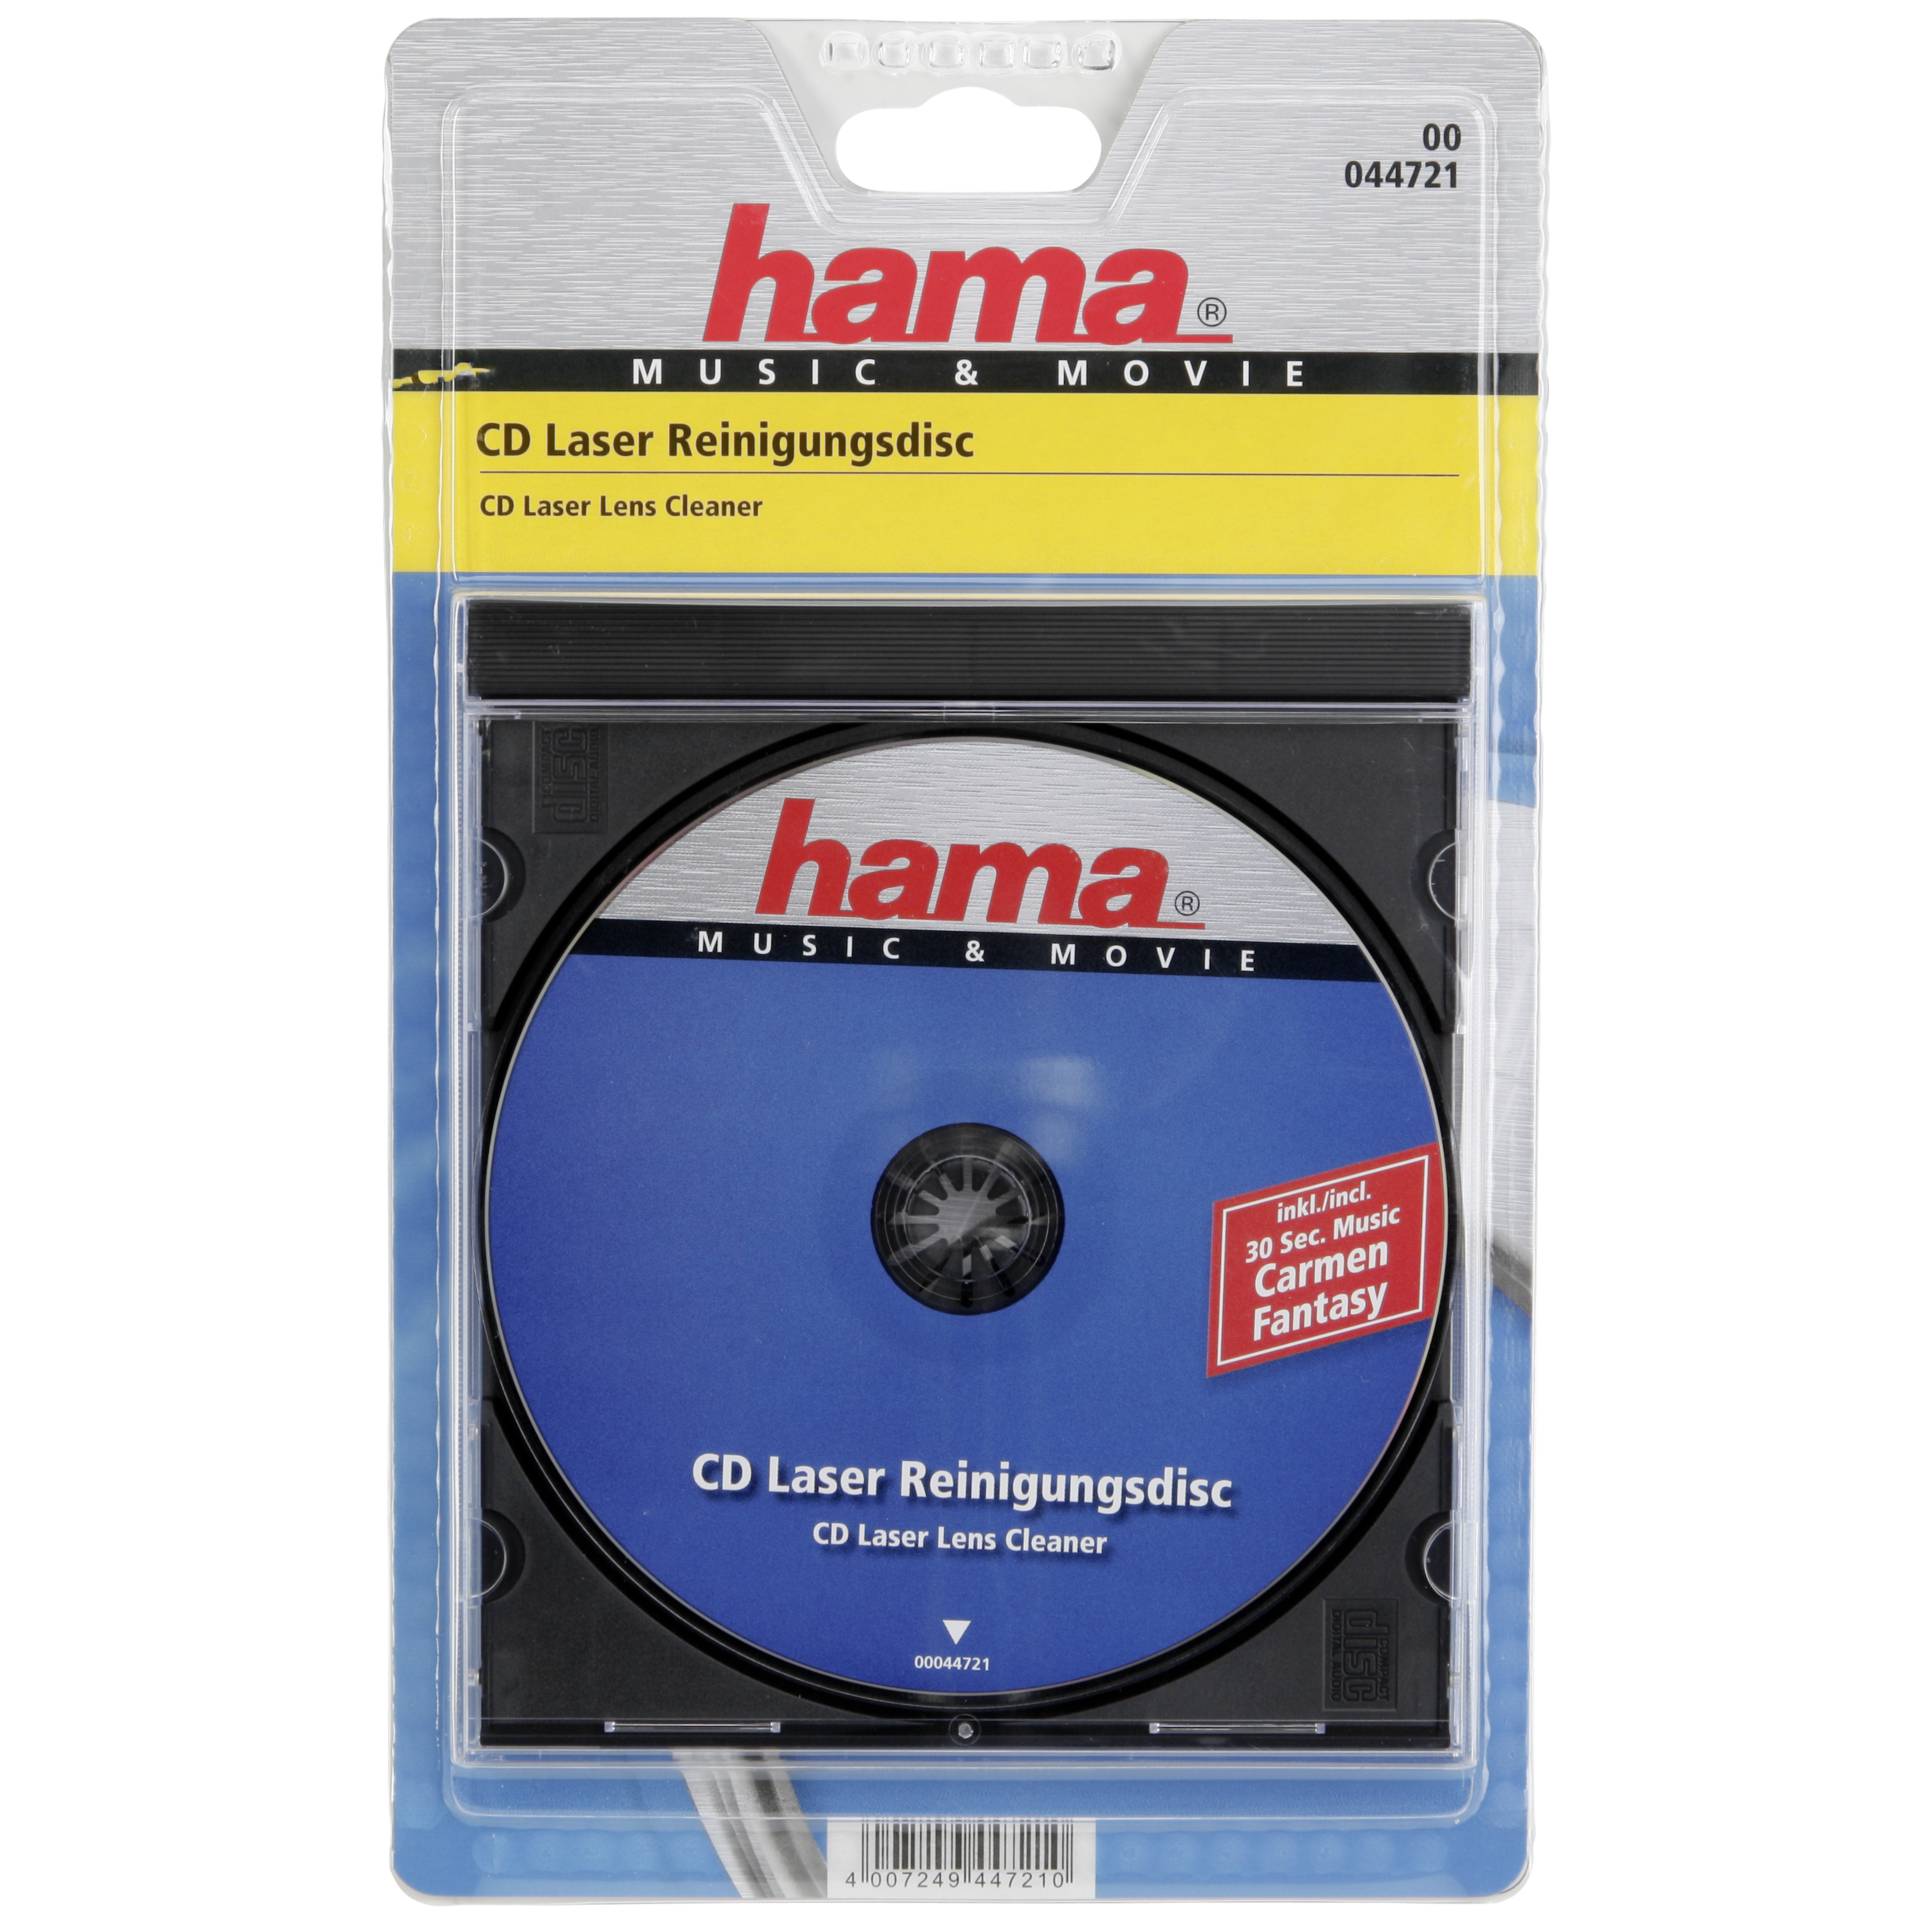 Hama CD Laser Lens Cleaner CDs/DVDs